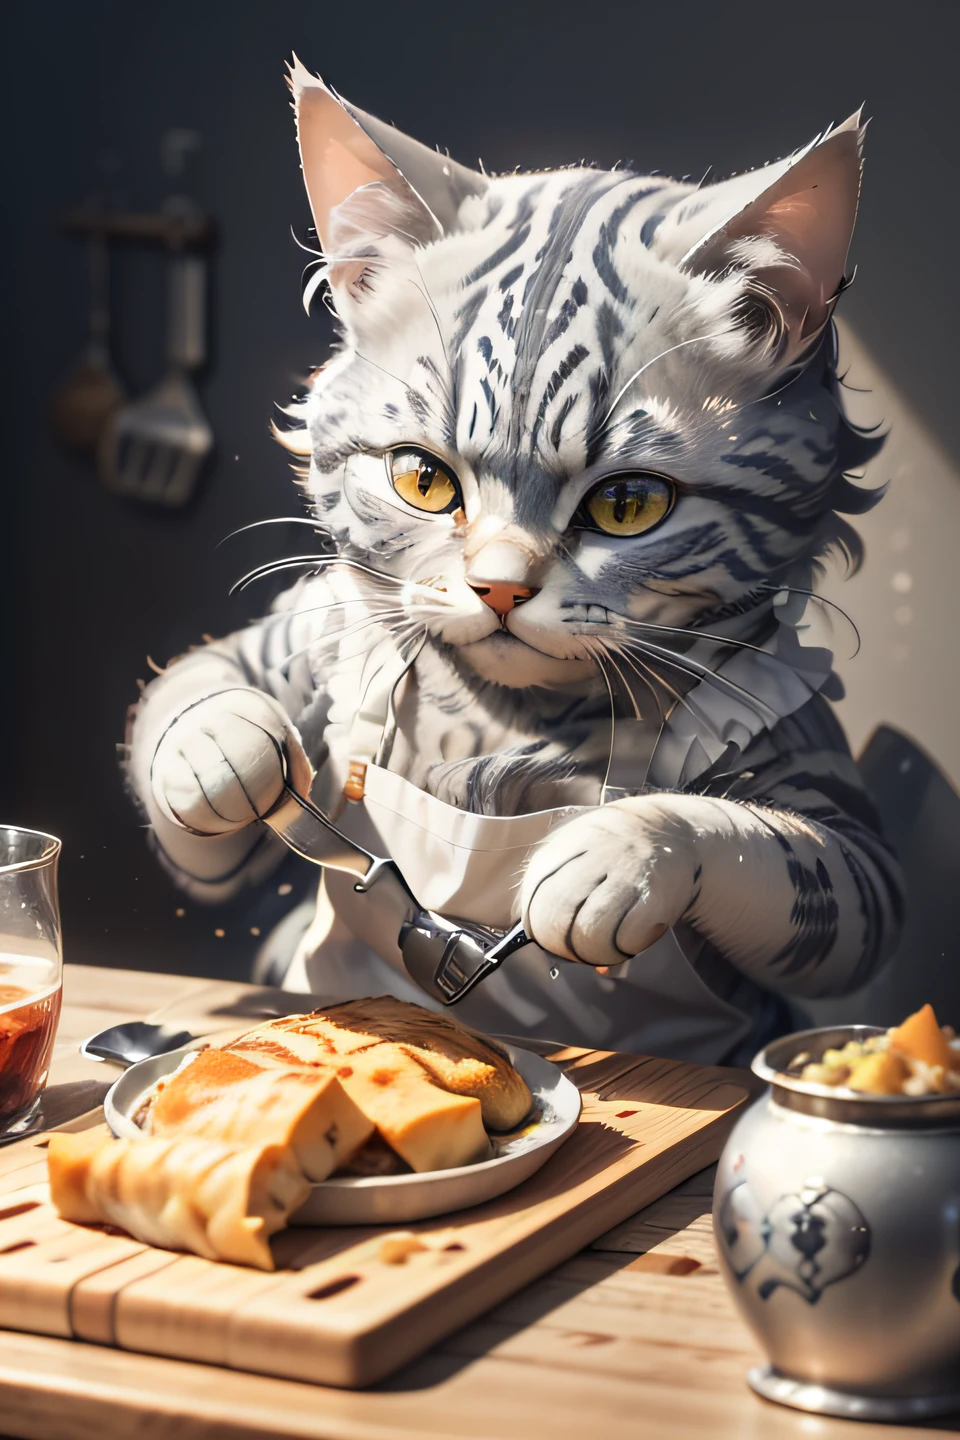 的特寫攝影 (灰色虎斑猫正在桌上准备食物:1.2), (c4態度:1.3), 在玻璃科技廚房裡, 超現實和複雜的細節, (有霧:1.1), 從下面看